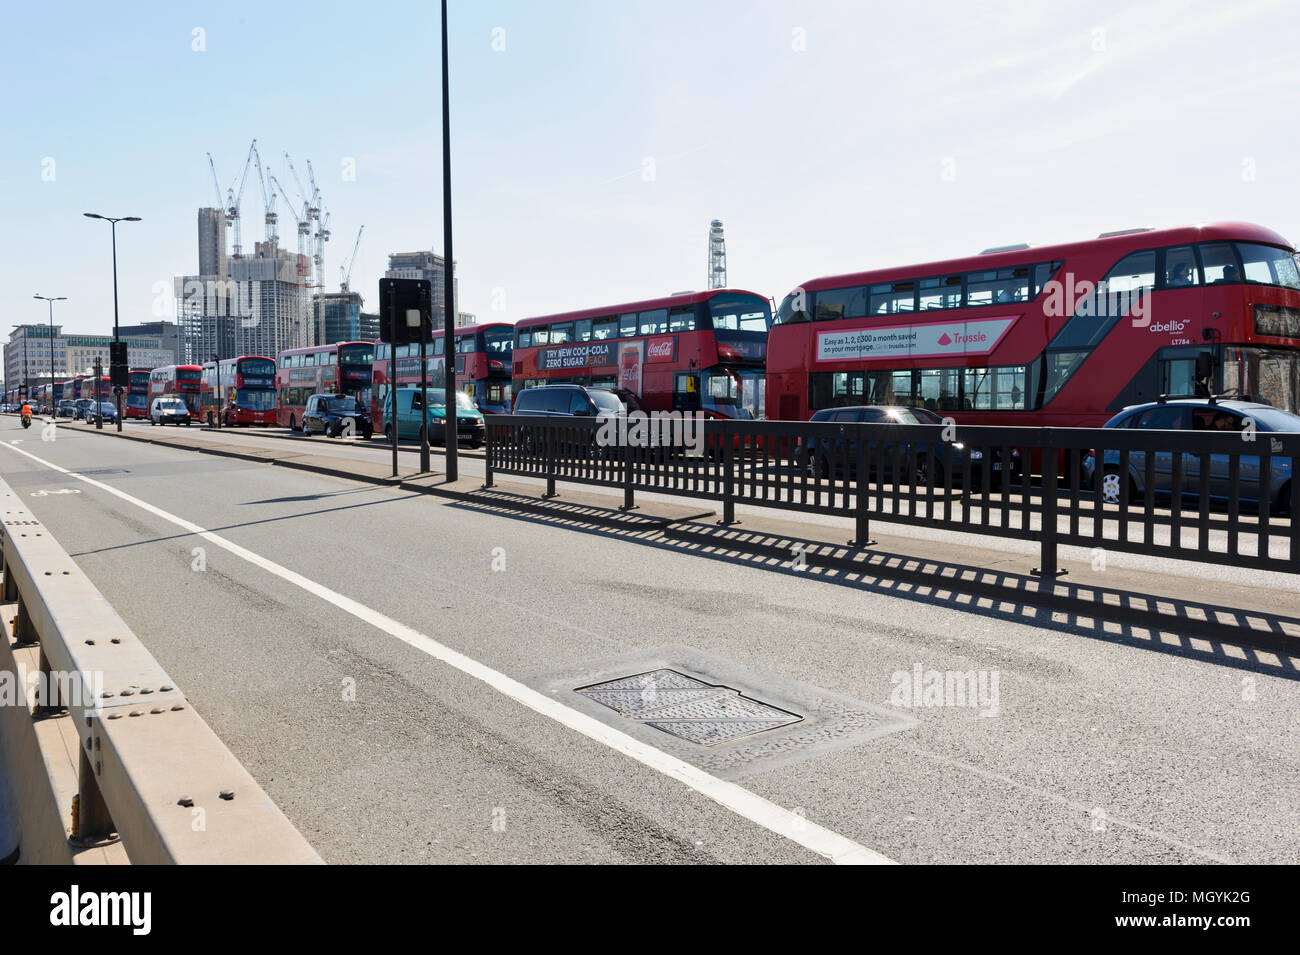 Una lunga coda di autobus rossi a Waterloo Bridge, City of London, Regno Unito Foto Stock